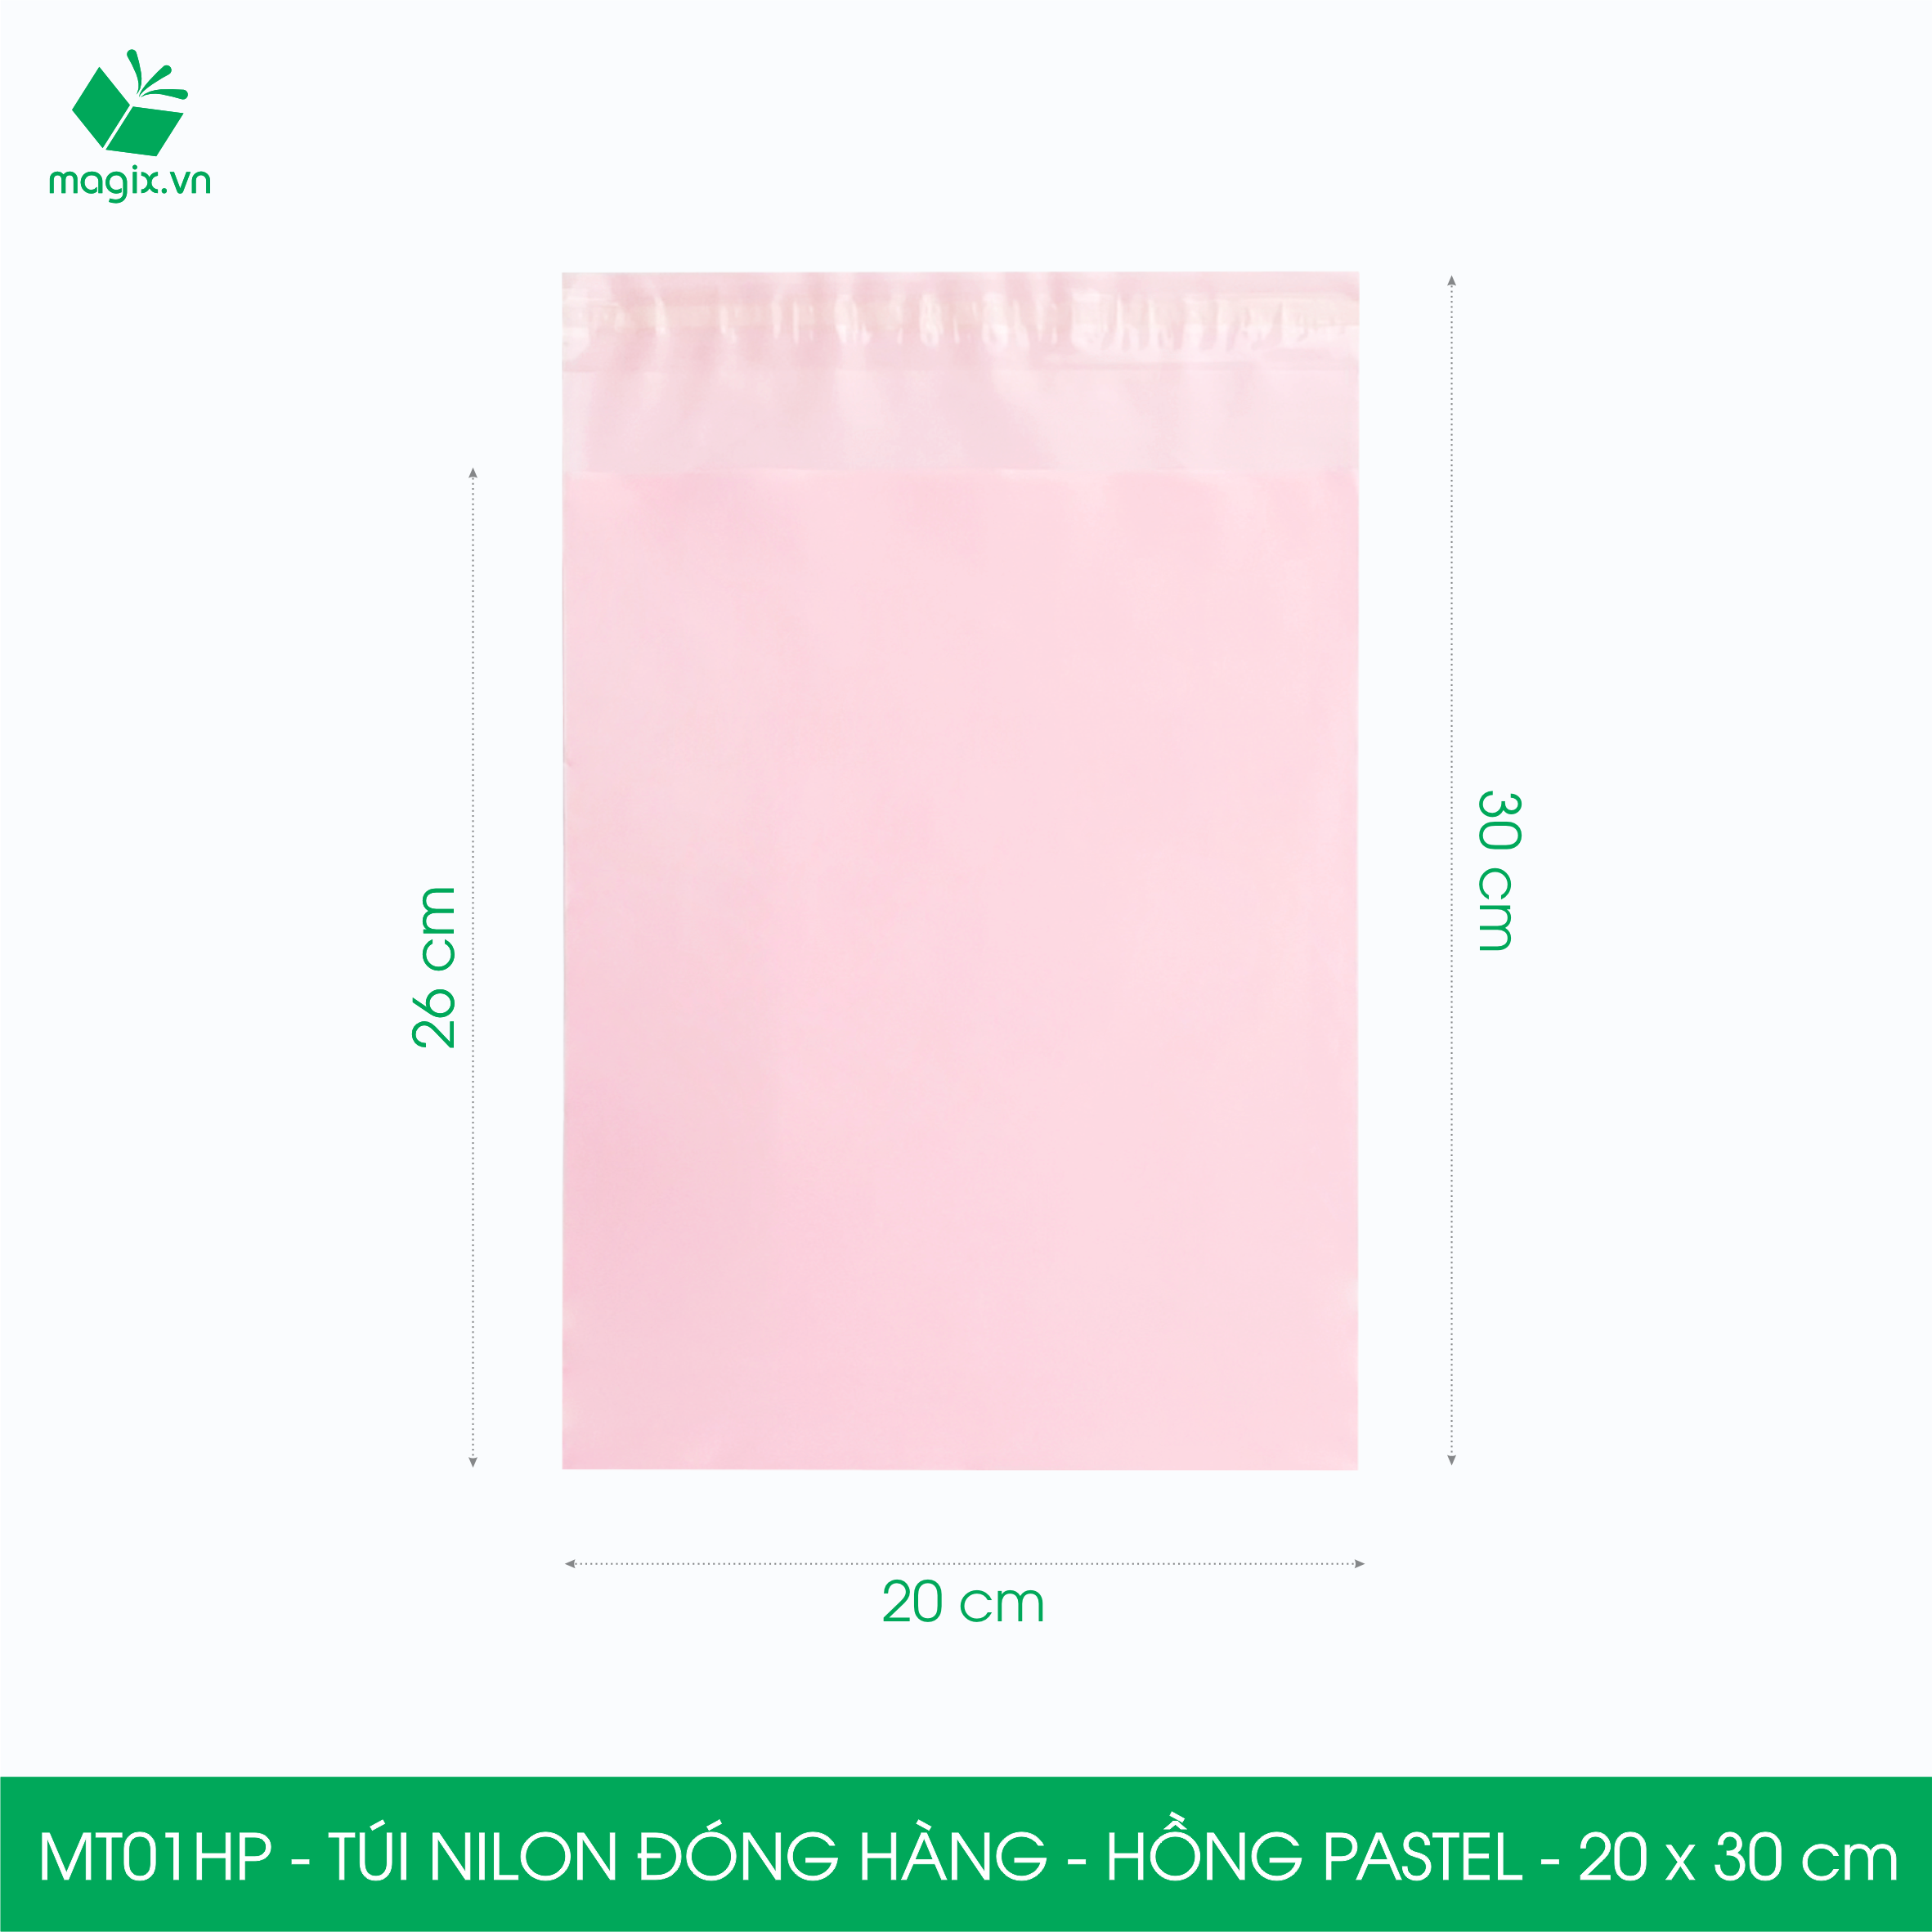 Hình ảnh MT01HP - 20x30 cm  - Túi nilon gói hàng - 200 túi niêm phong đóng hàng màu hồng pastel